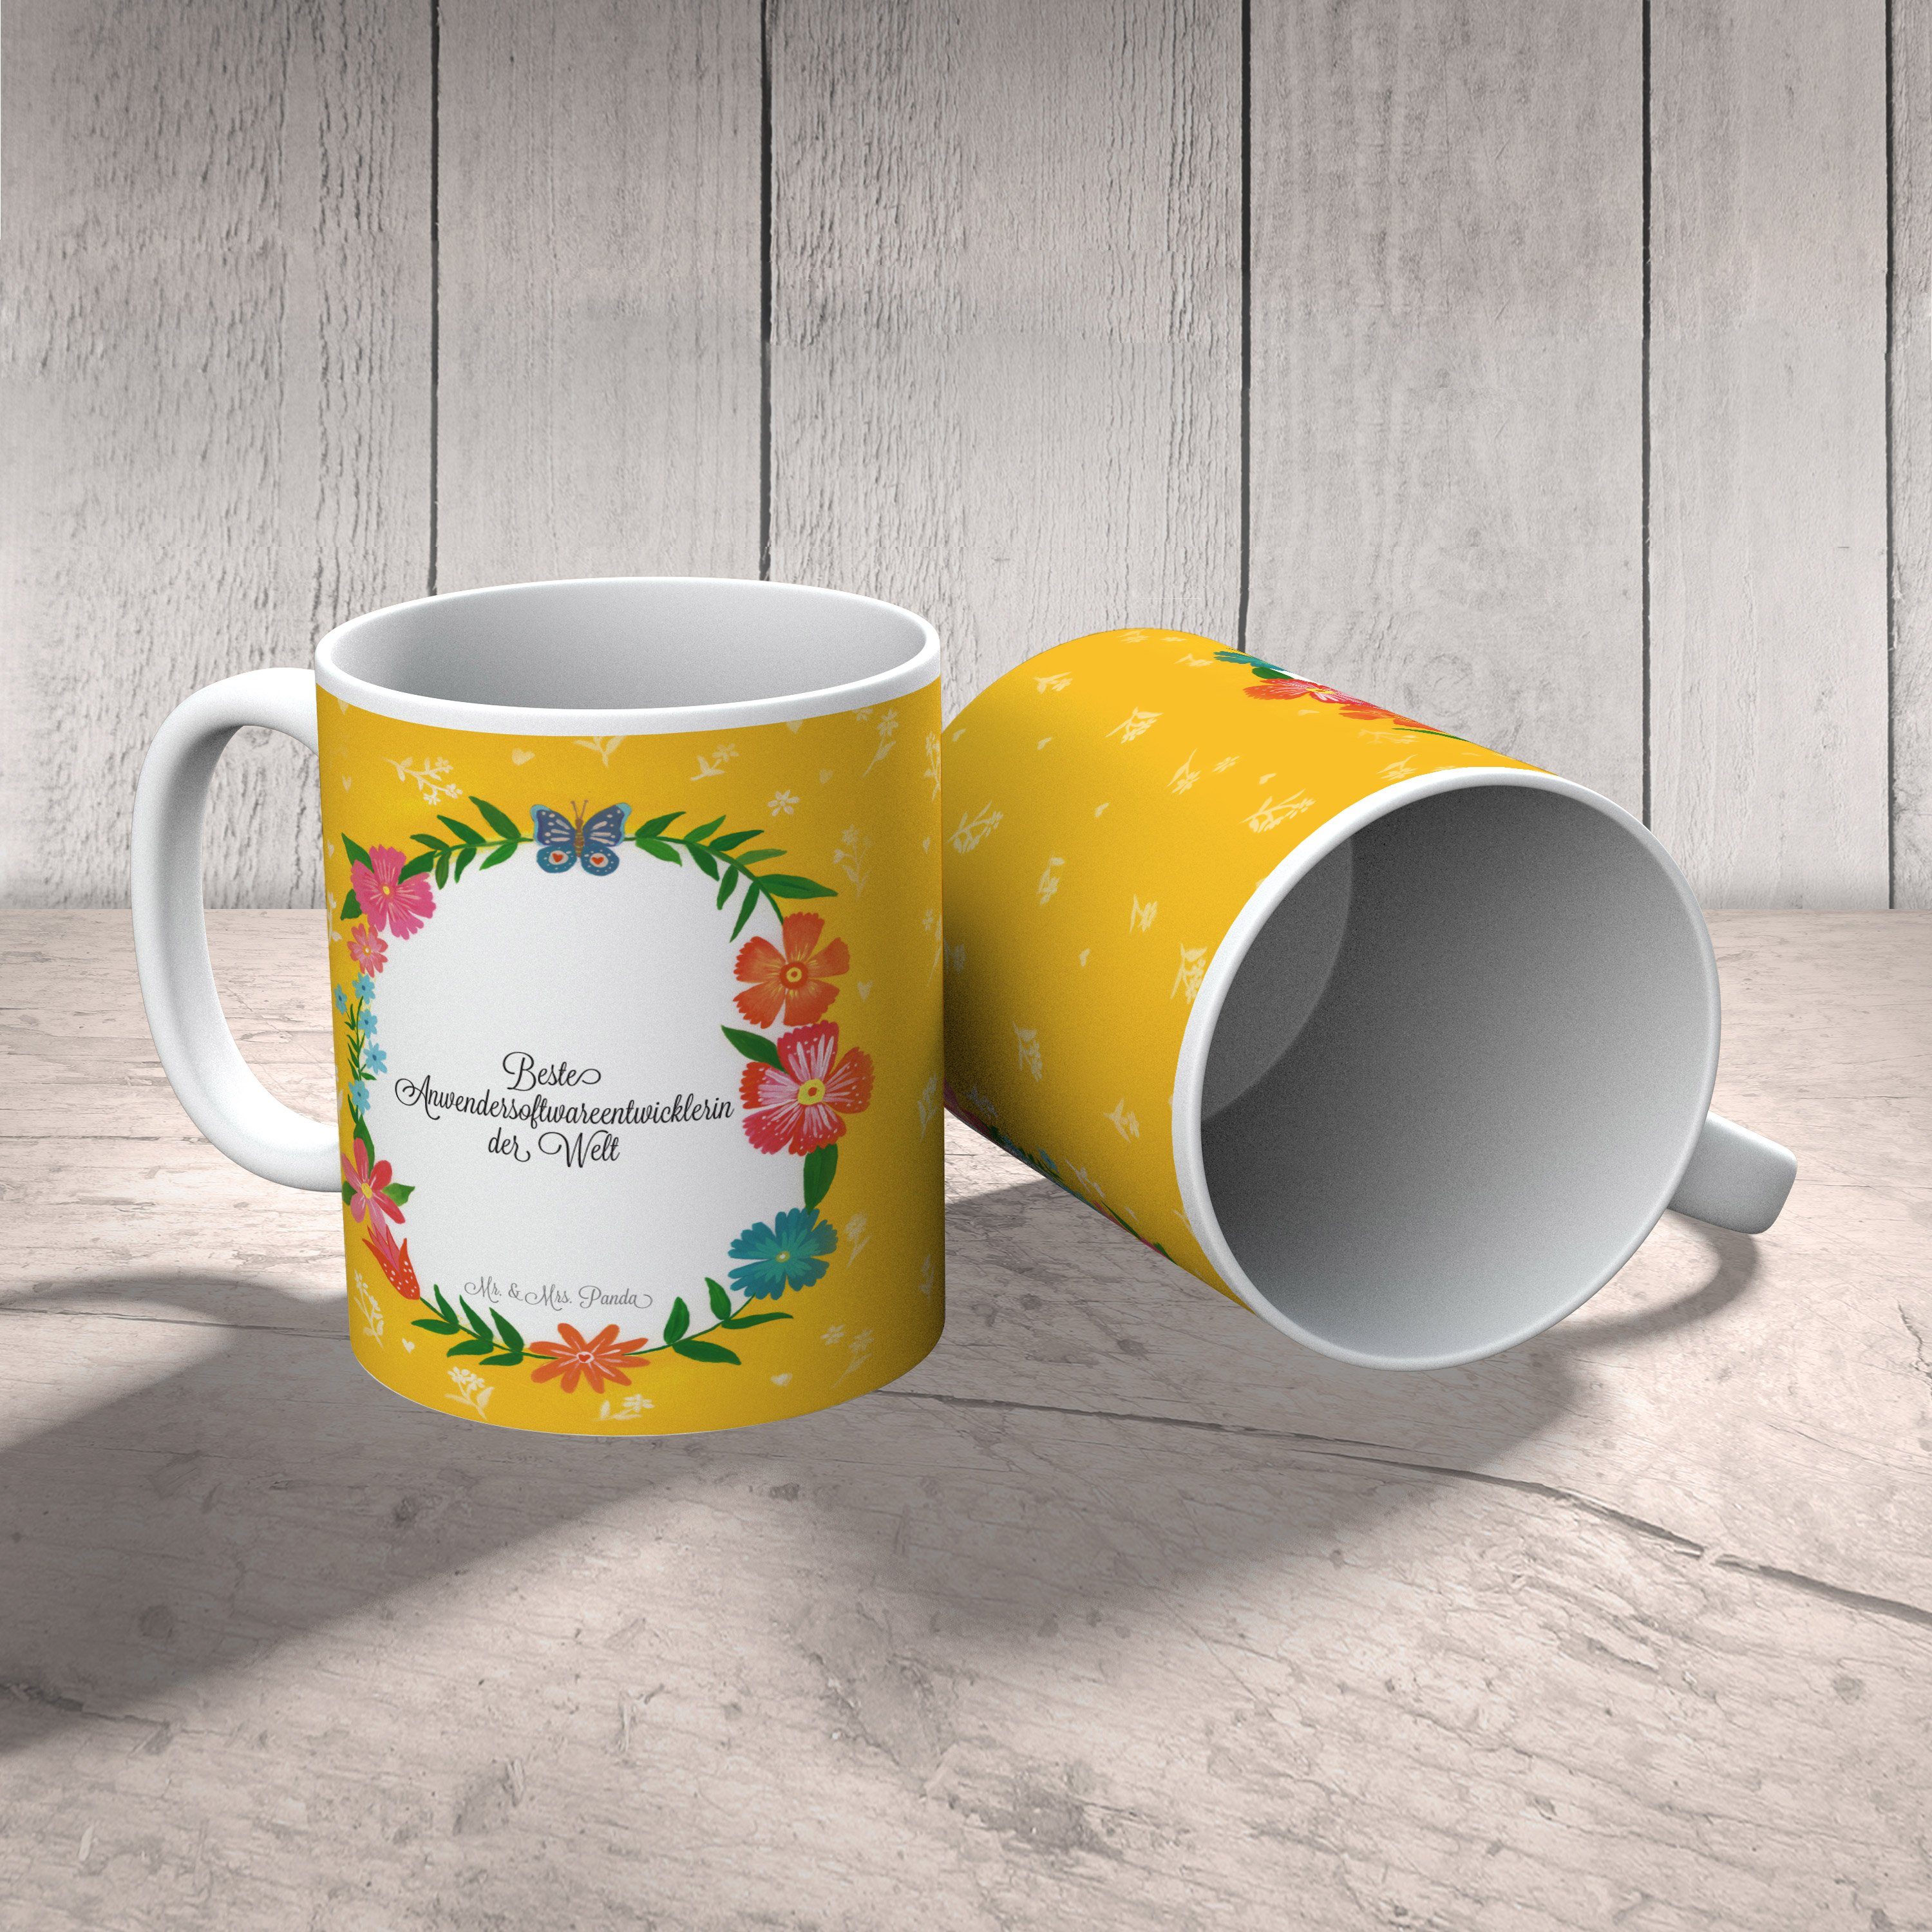 Mr. & Mrs. Panda Tasse Keramik - Anwendersoftwareentwicklerin Geschenk, Tee, Tasse Sprüche, Abschied